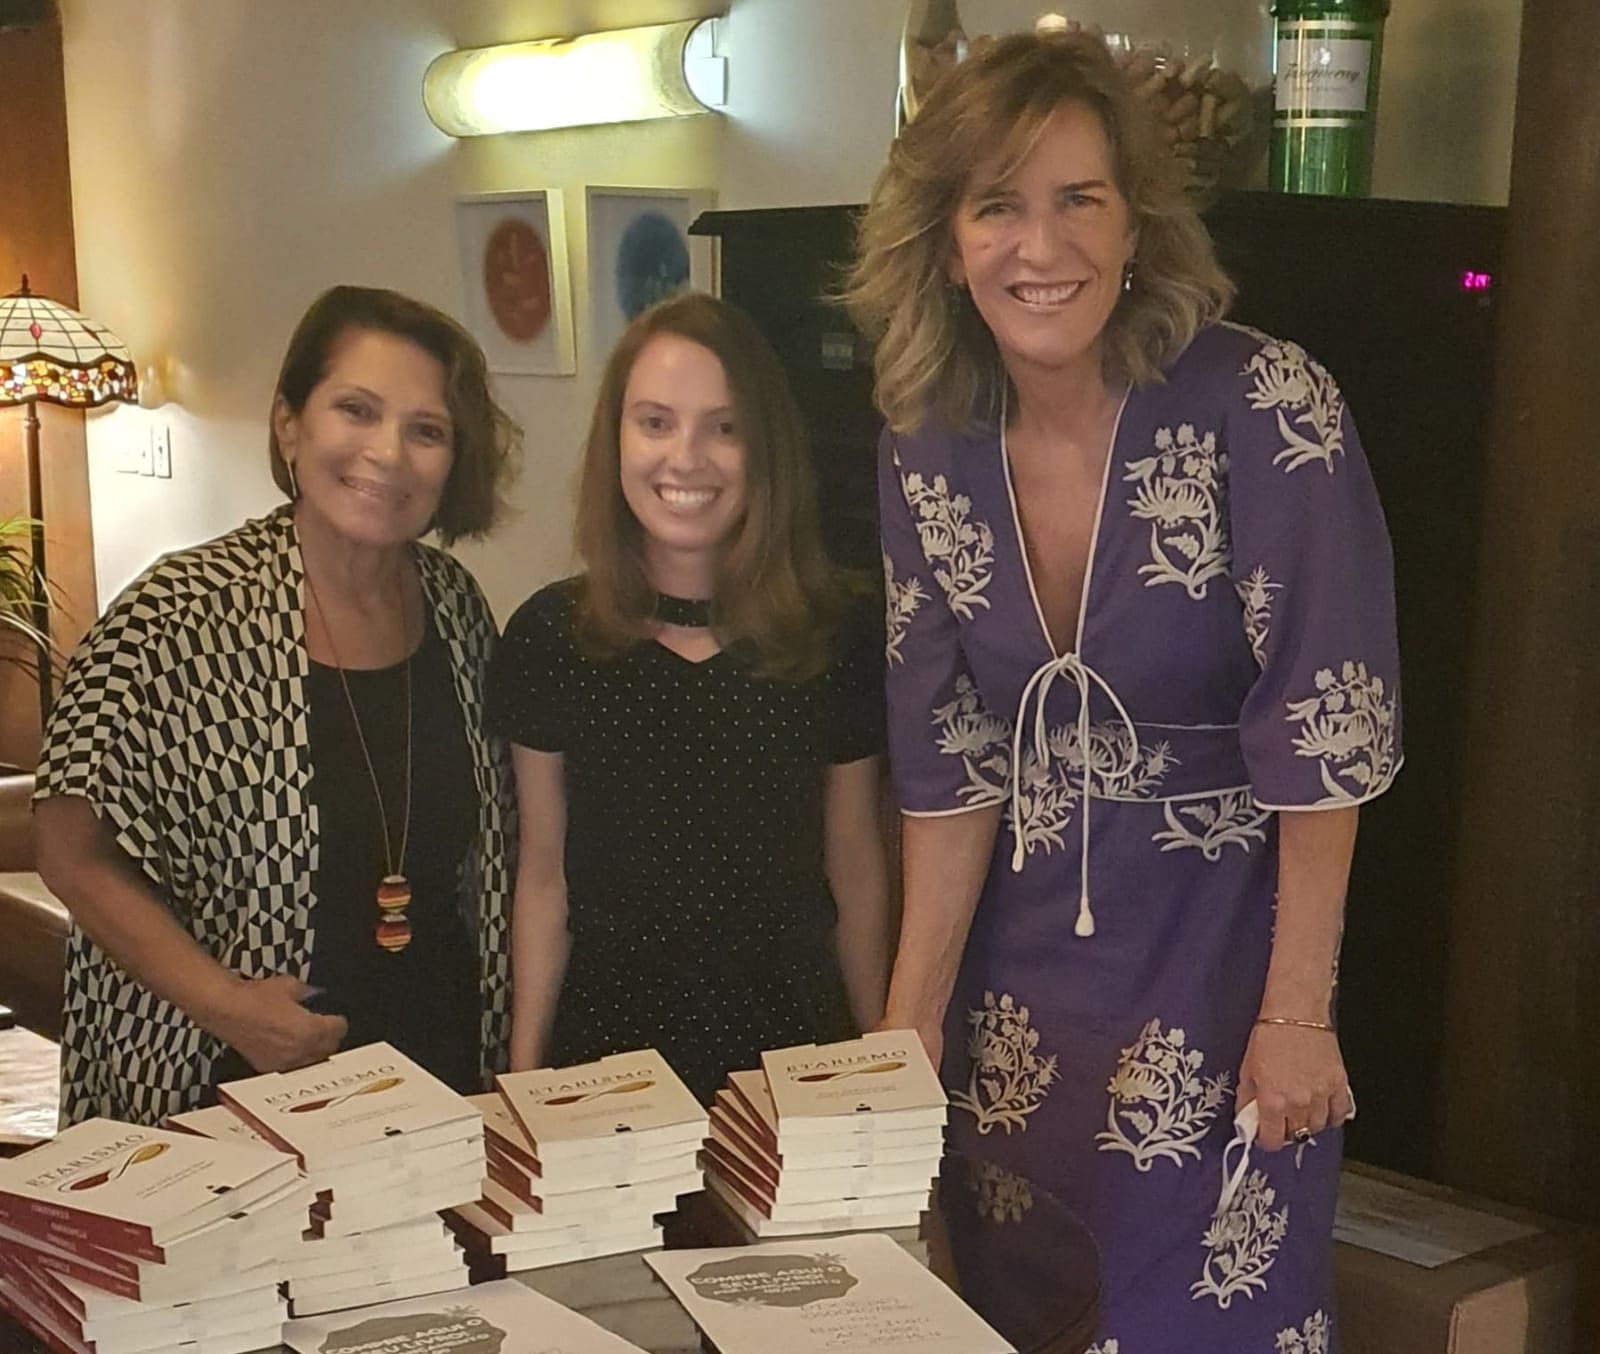 mulheres comemoram o lançamento do livro Etarismo, autora dá autografos para duas leitoras sorridentes. as três mulheres sorriem para a câmera.